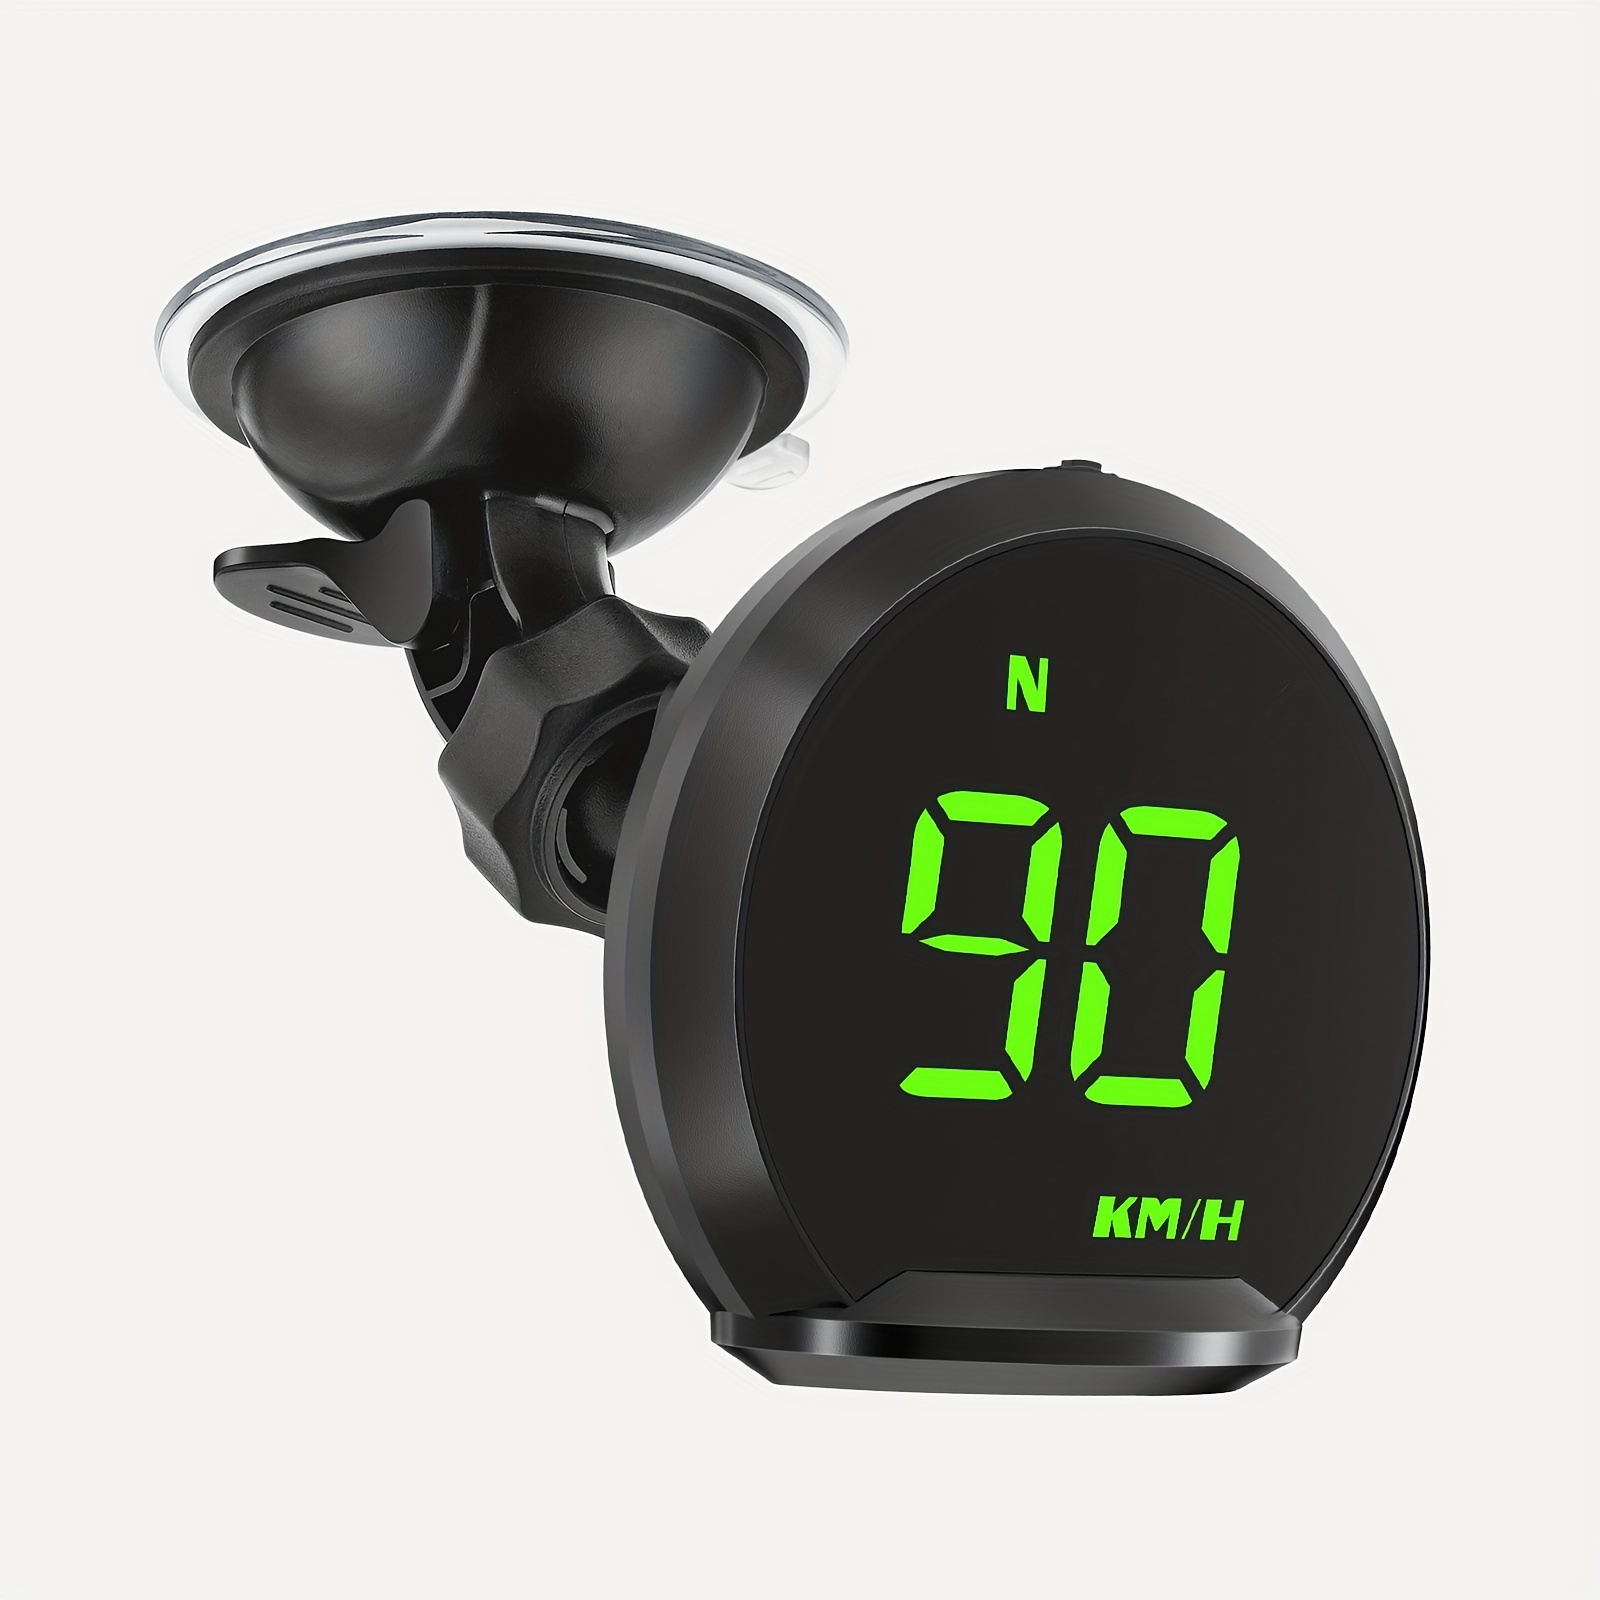 Compteur de vitesse GPS numérique Affichage tête haute universelle pour  voiture LCD Display HUD avec vitesse MPH